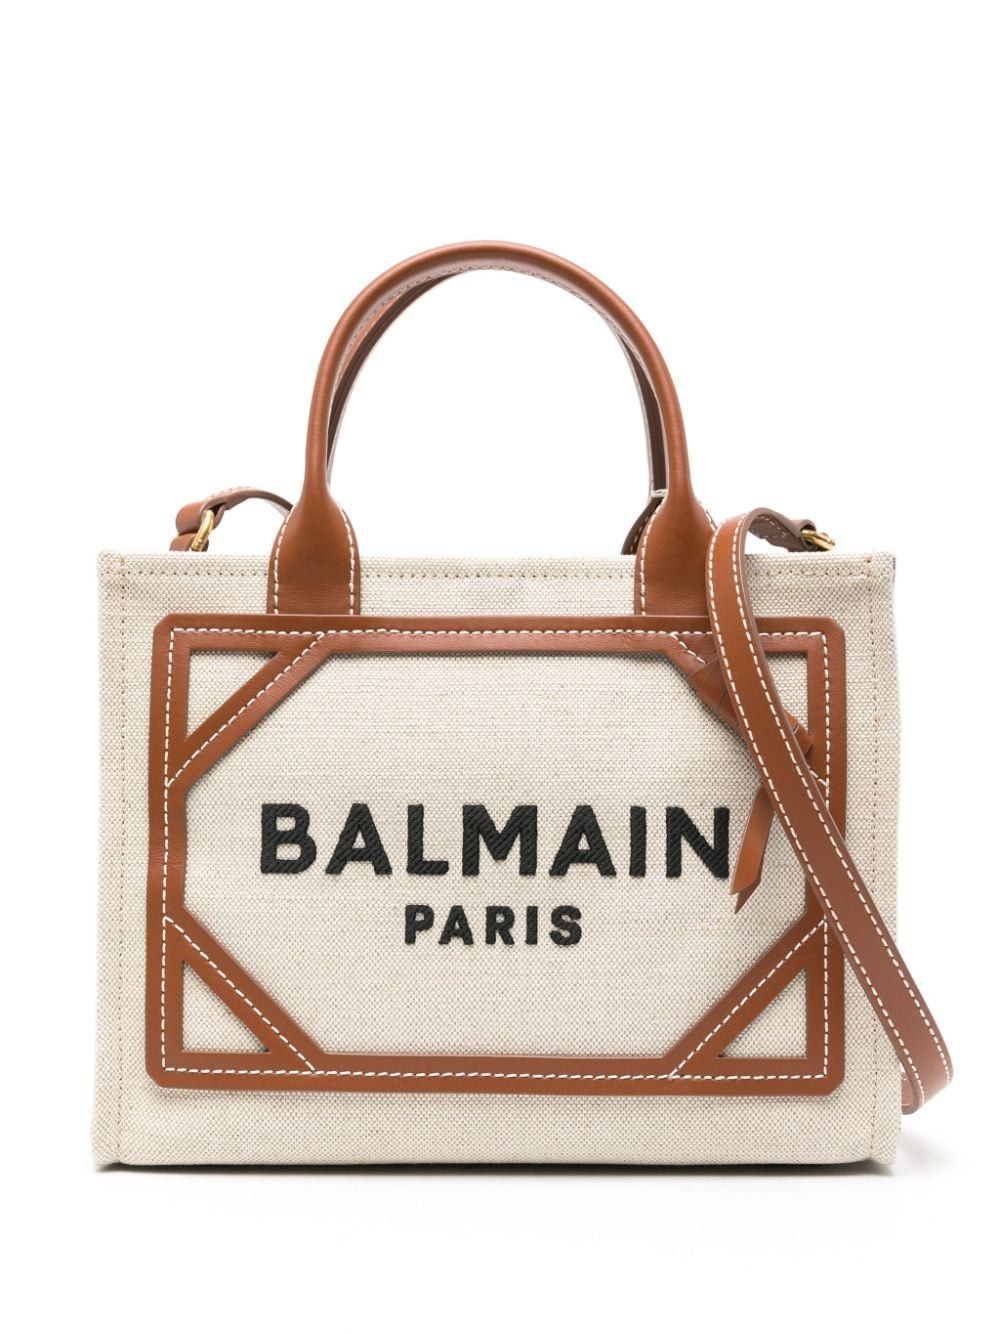 BALMAIN Women's Mini Maroon Cotton-Linen Top-Handle Shopping Bag